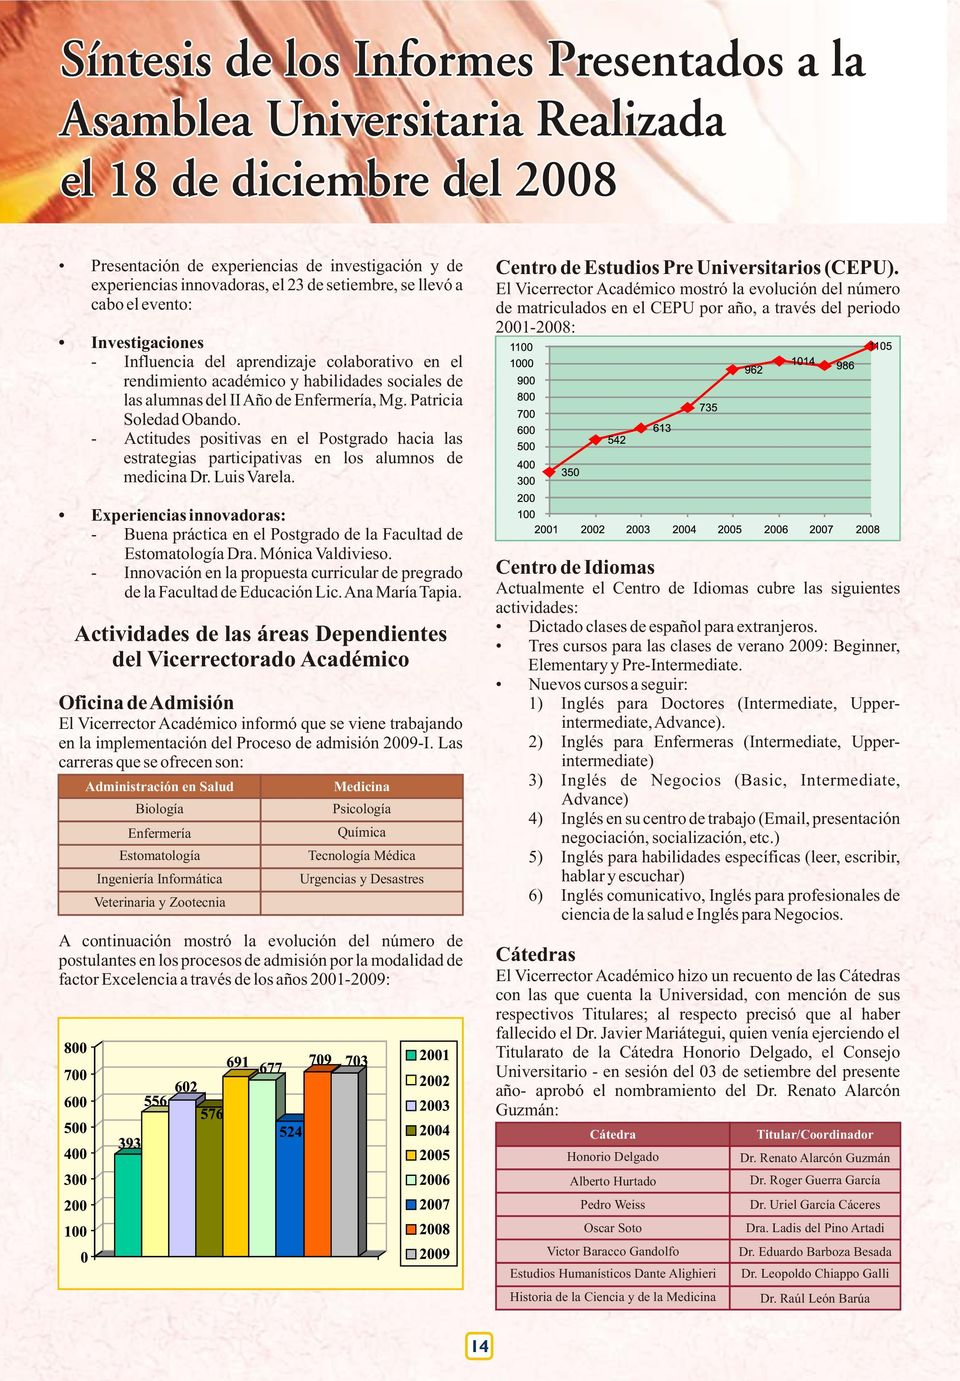 Patricia Soledad Obando. - Actitudes positivas en el Postgrado hacia las estrategias participativas en los alumnos de medicina Dr. Luis Varela.